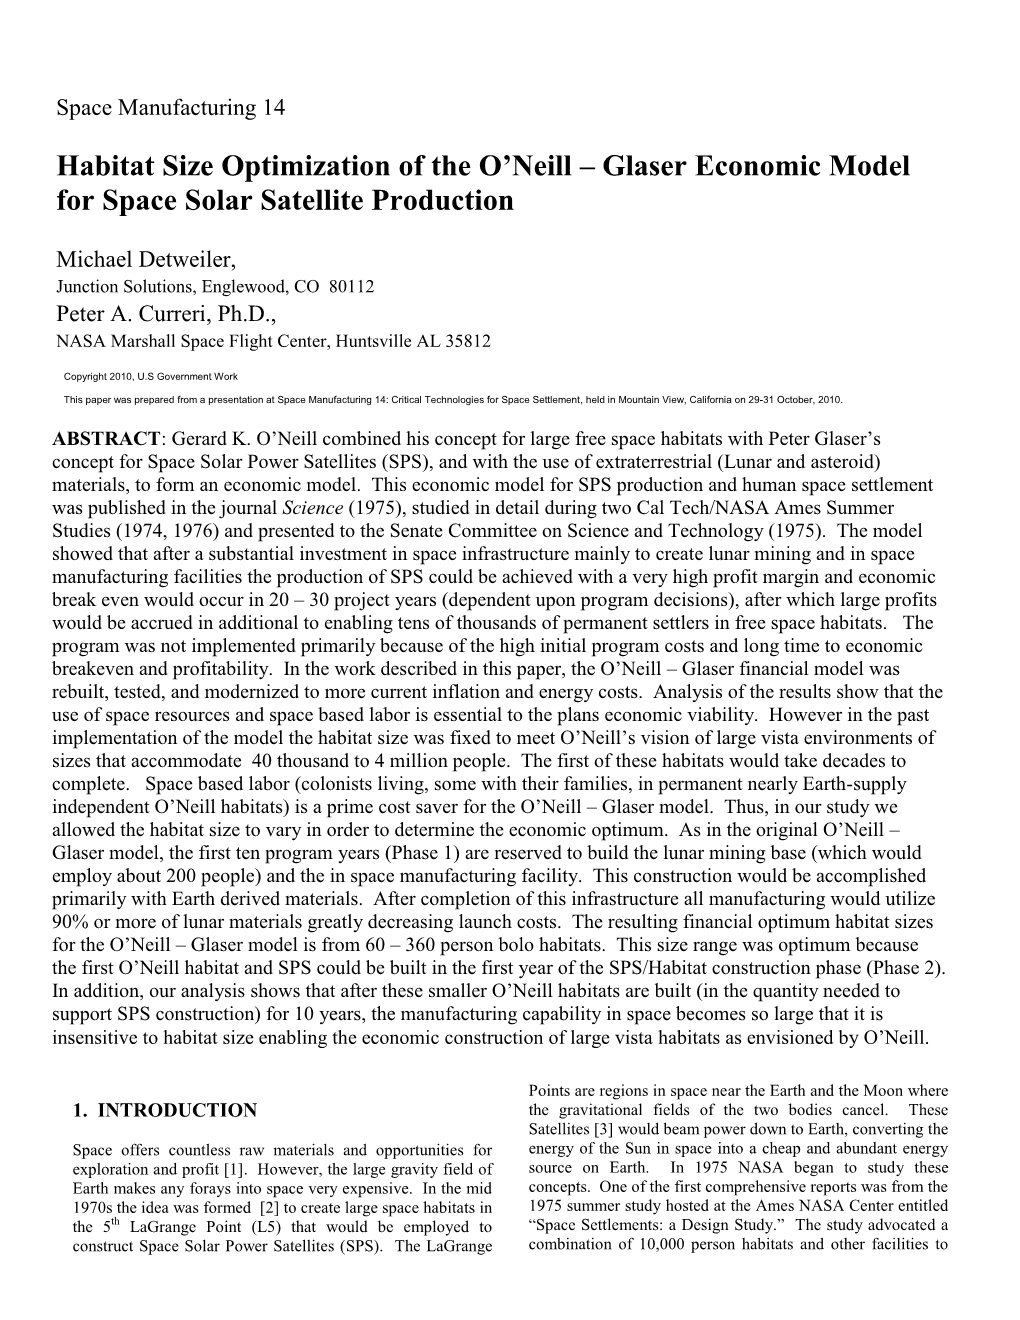 Habitat Size Optimization of the O'neill – Glaser Economic Model